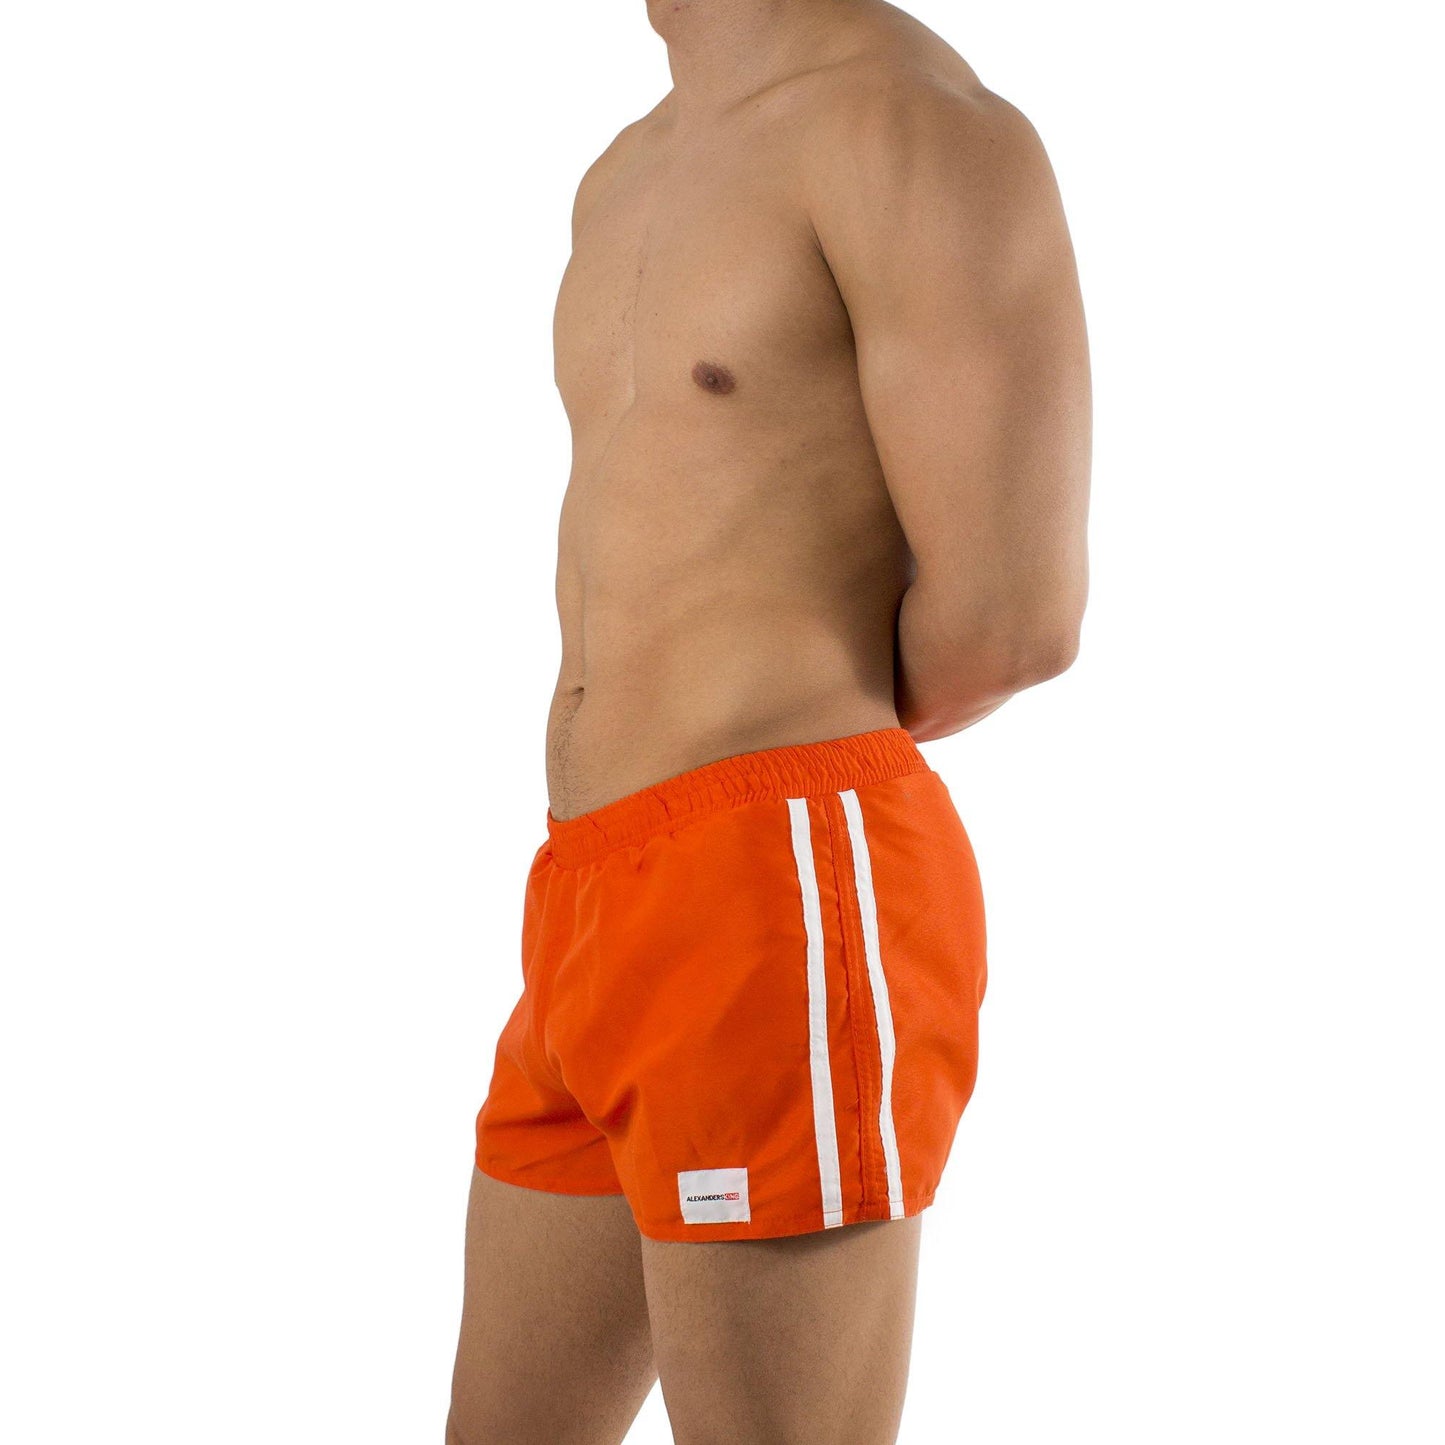 TS0007 - Traje de Baño Short Naranja/Blanco - AlexandersKing Underwear